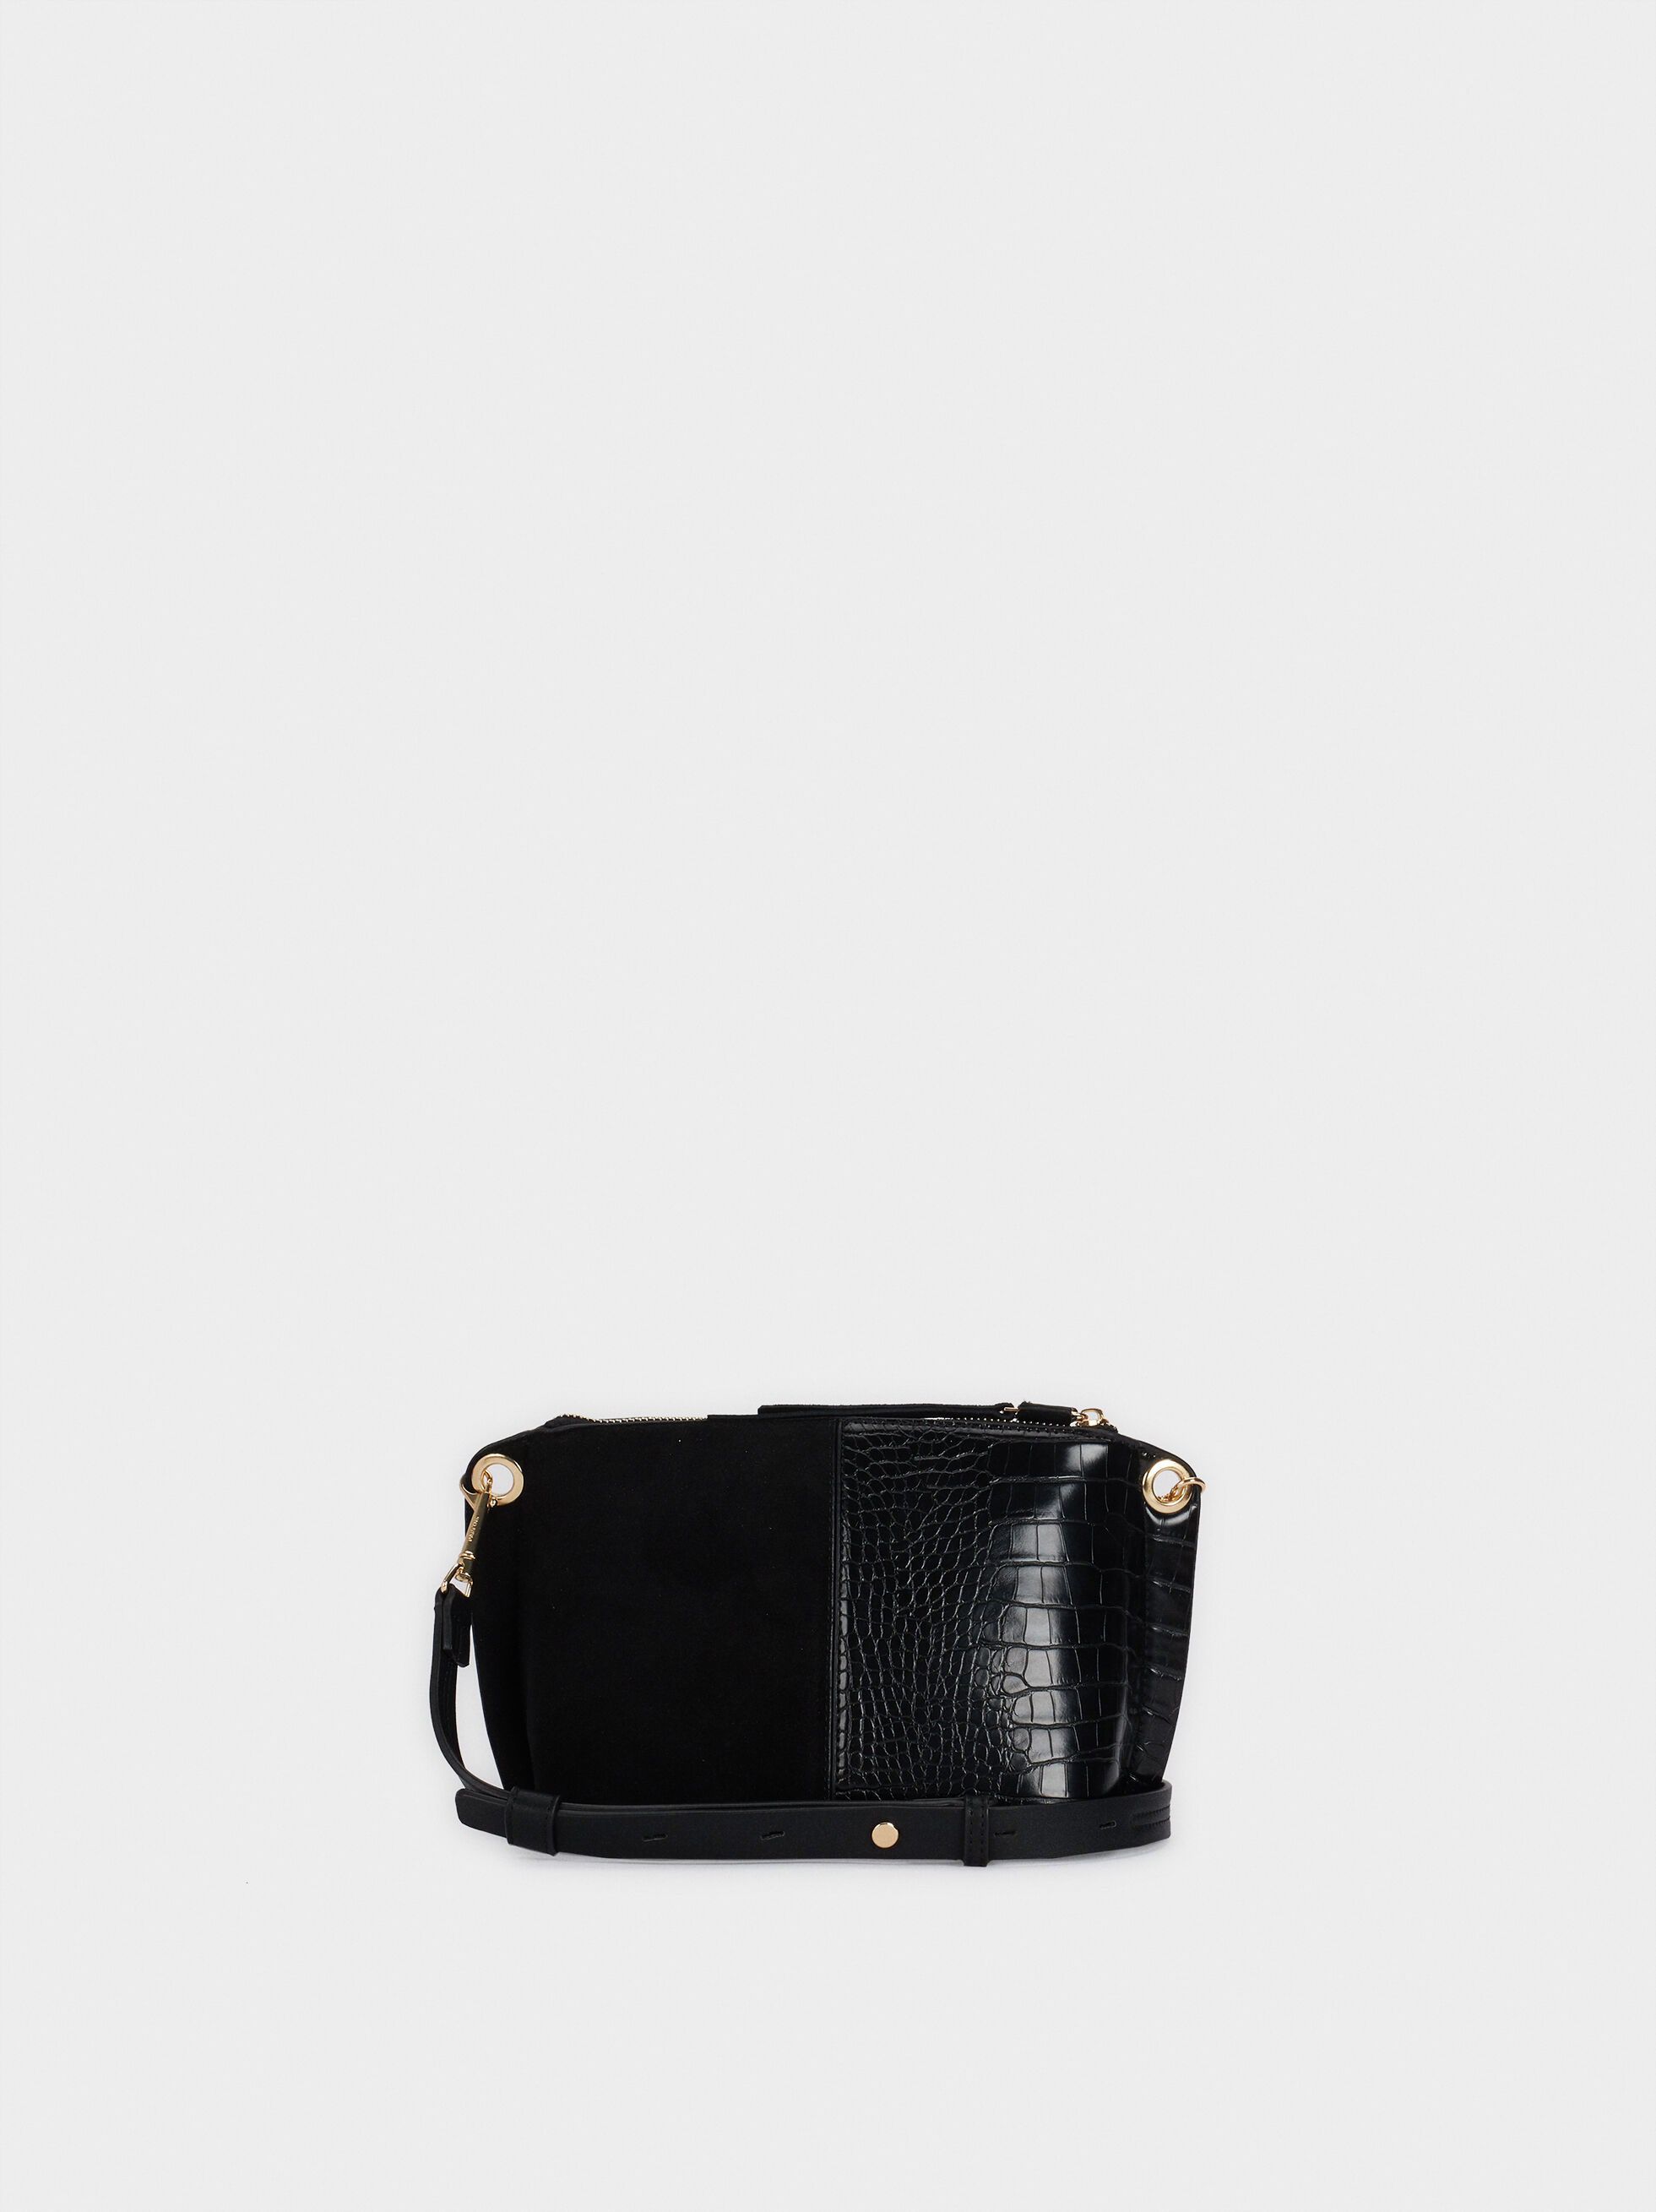 black suede crossbody purse